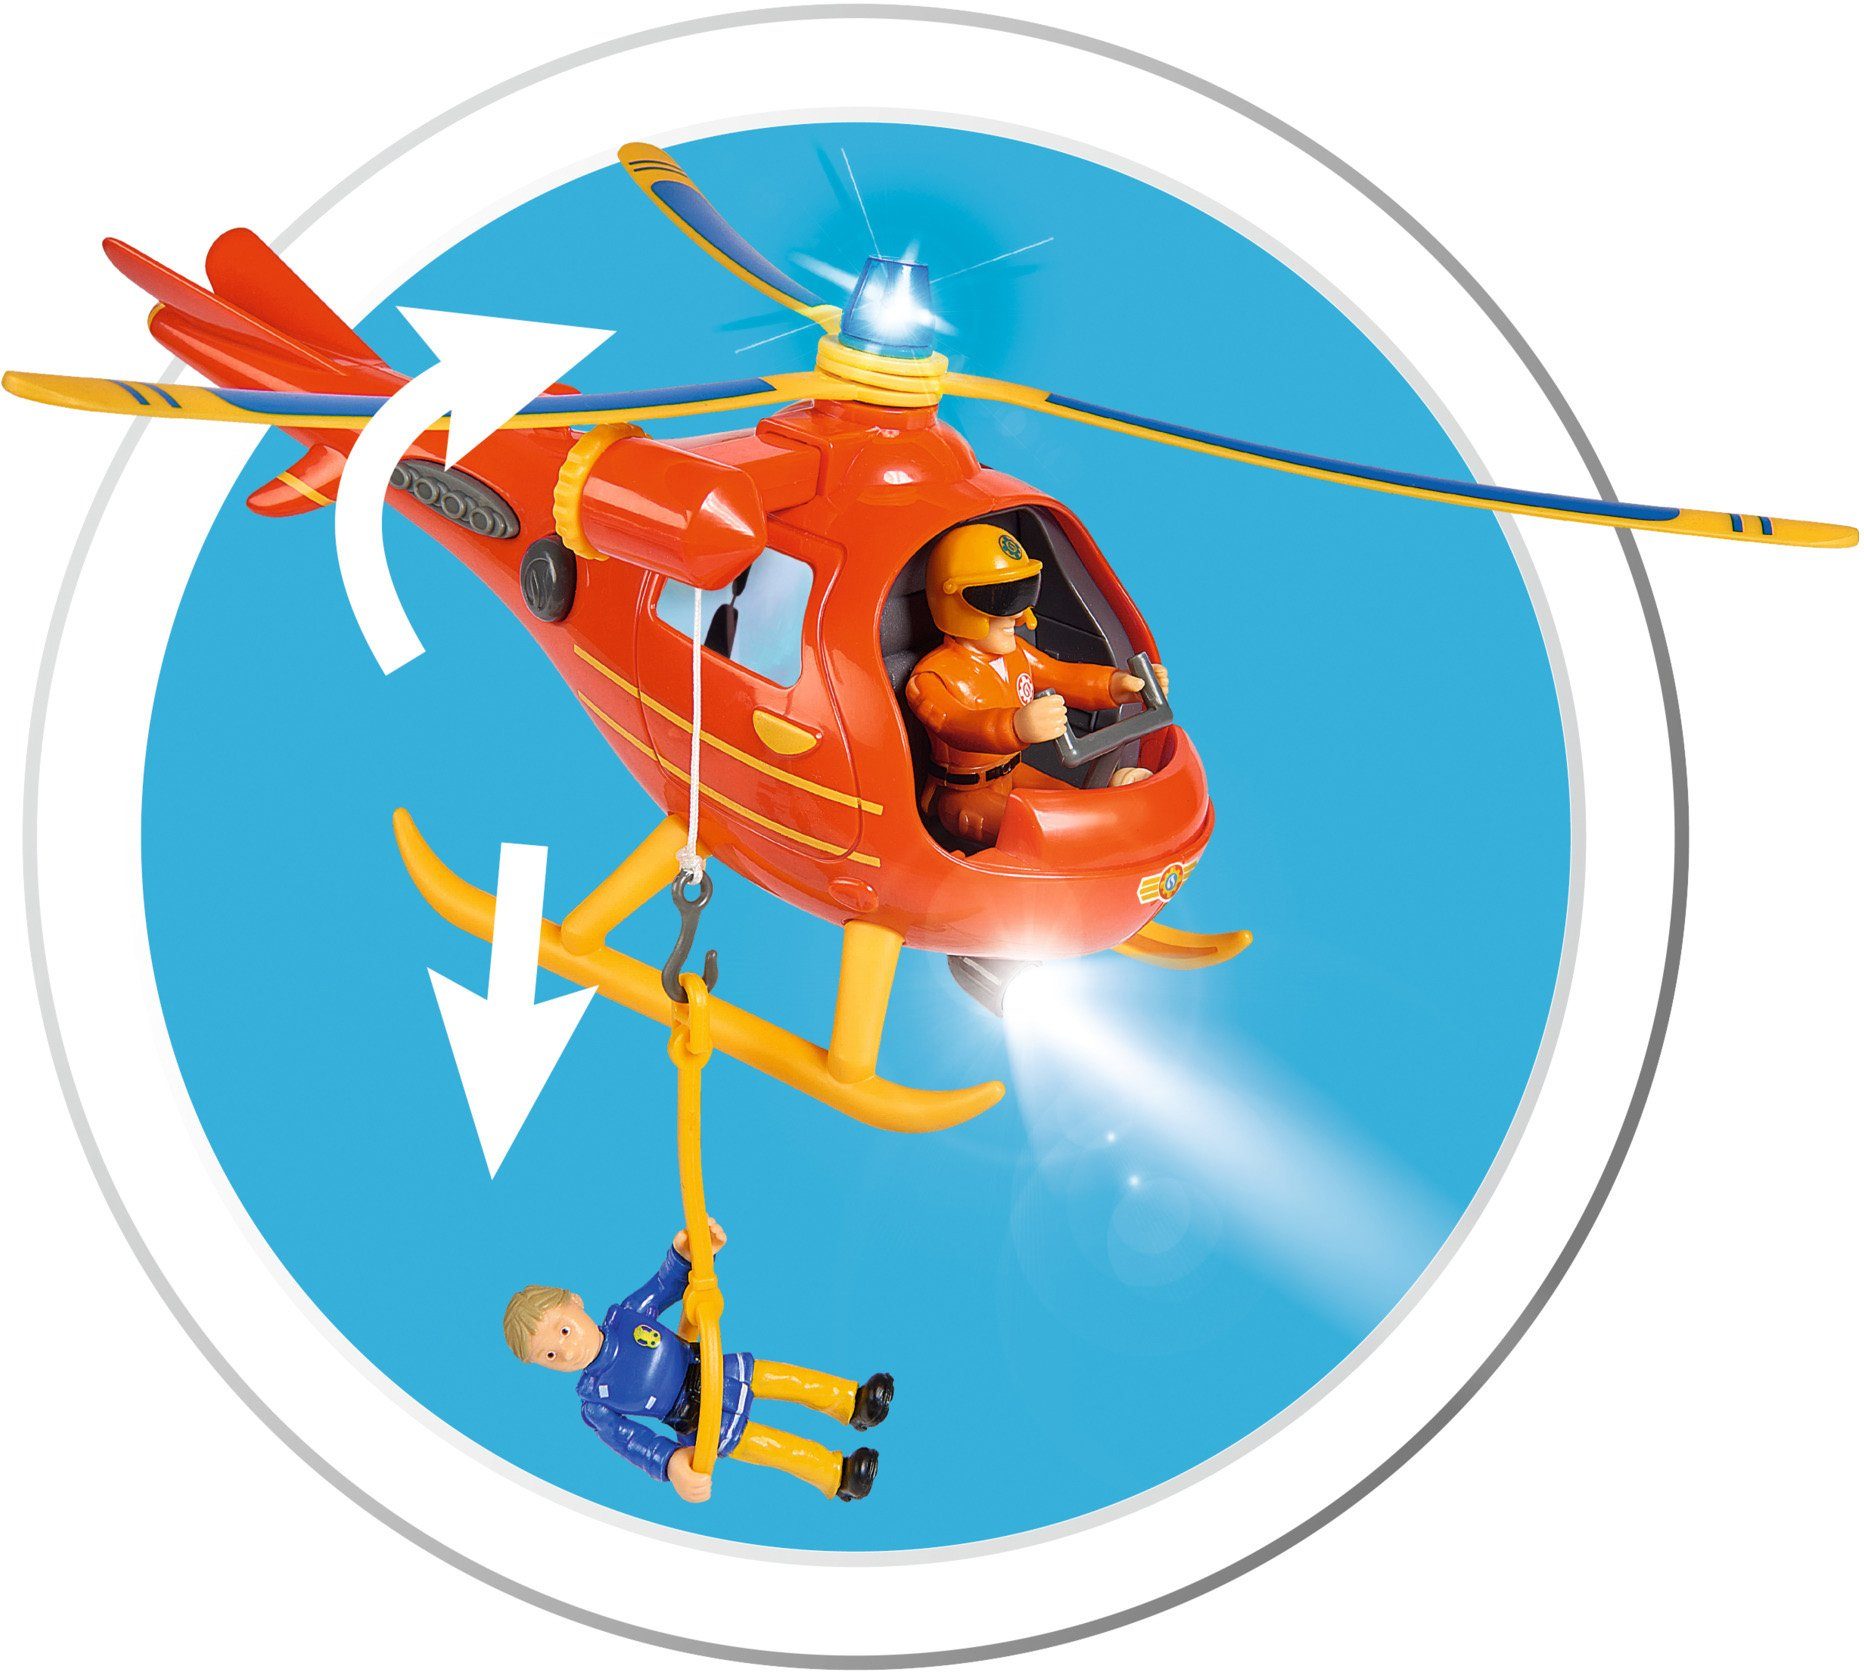 Sound- mit SIMBA Spielzeug-Hubschrauber Sam, Wallaby, Feuerwehrmann Lichteffekten und